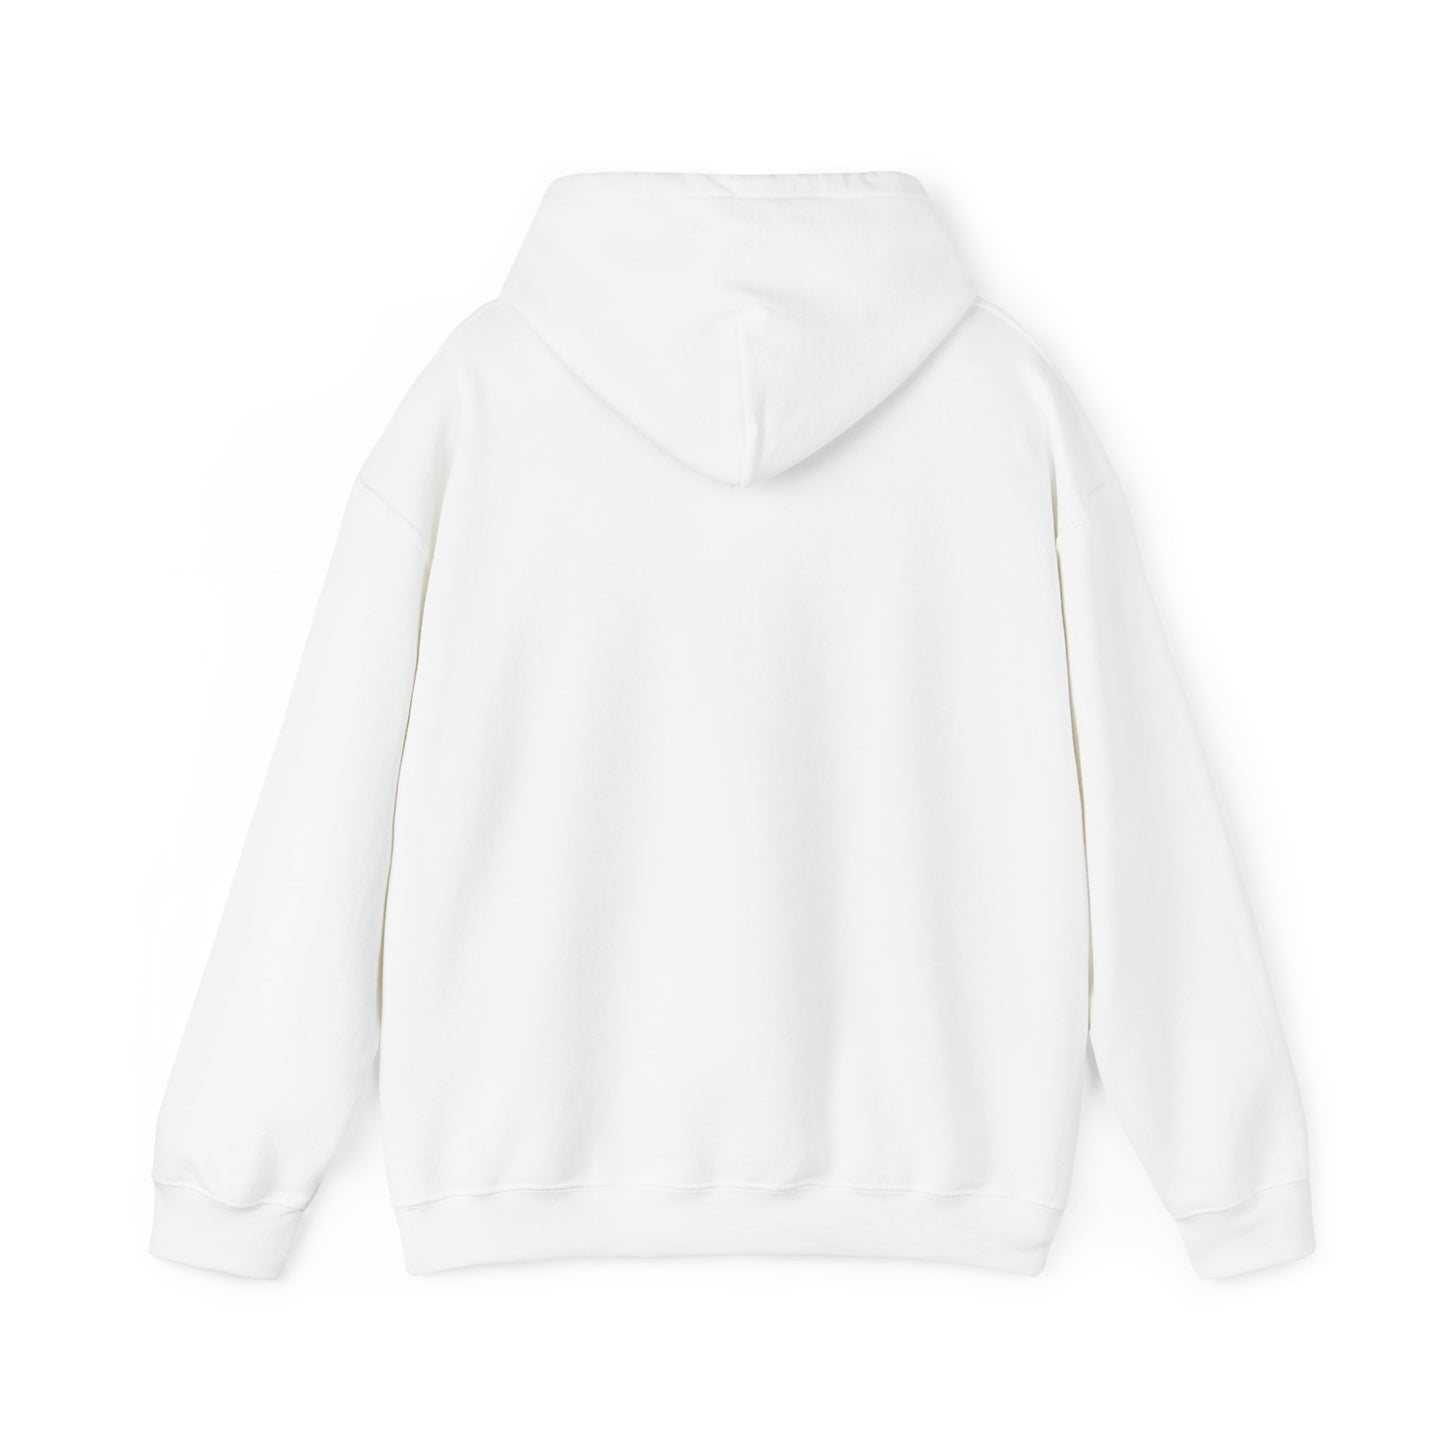 Branded Weeb Unisex Heavy Blend™ Hooded Sweatshirt